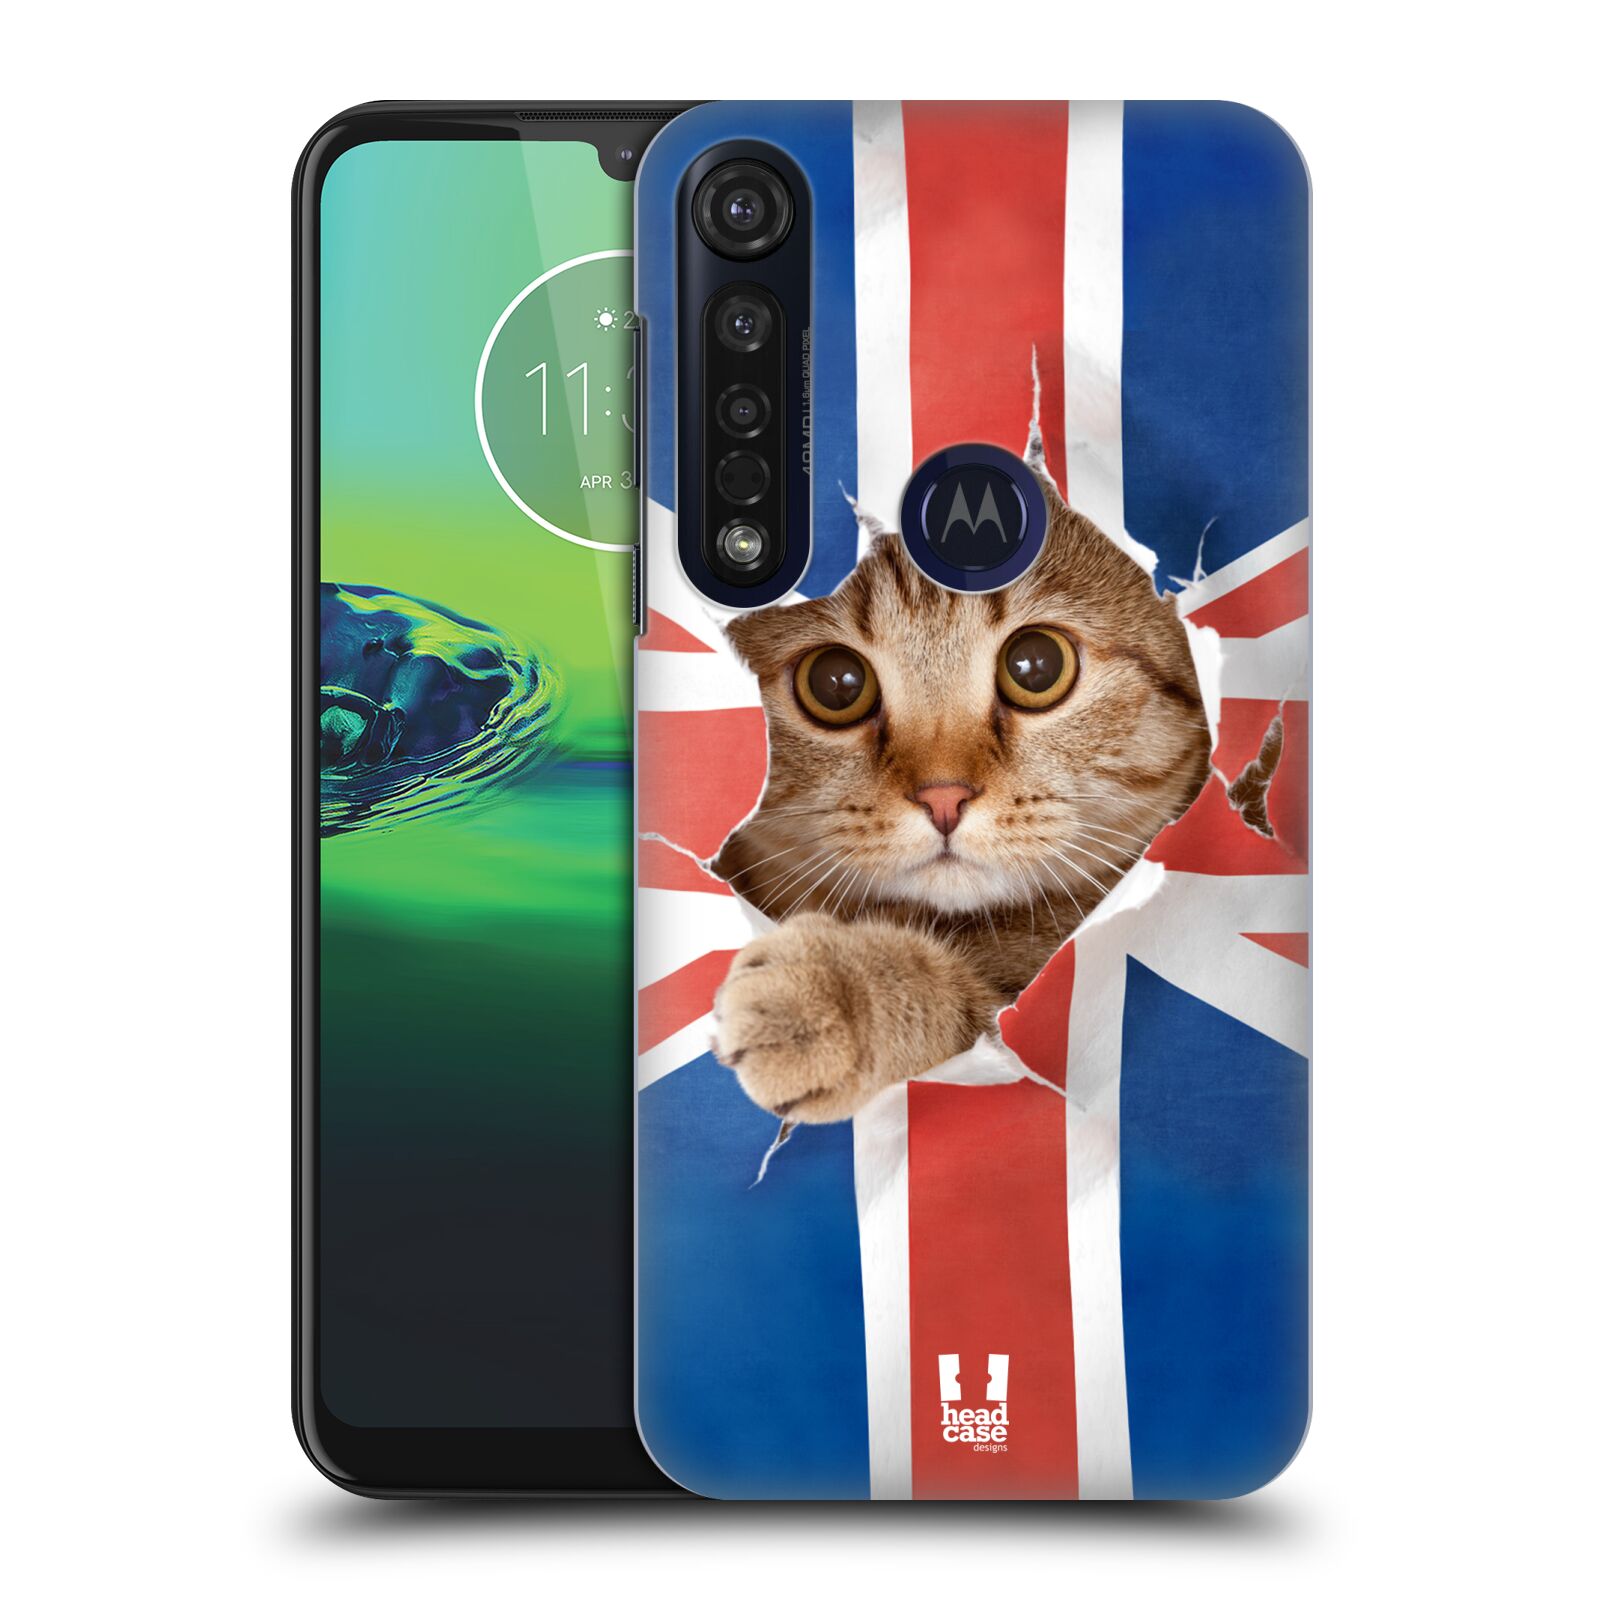 Pouzdro na mobil Motorola Moto G8 PLUS - HEAD CASE - vzor Legrační zvířátka kočička a Velká Británie vlajka